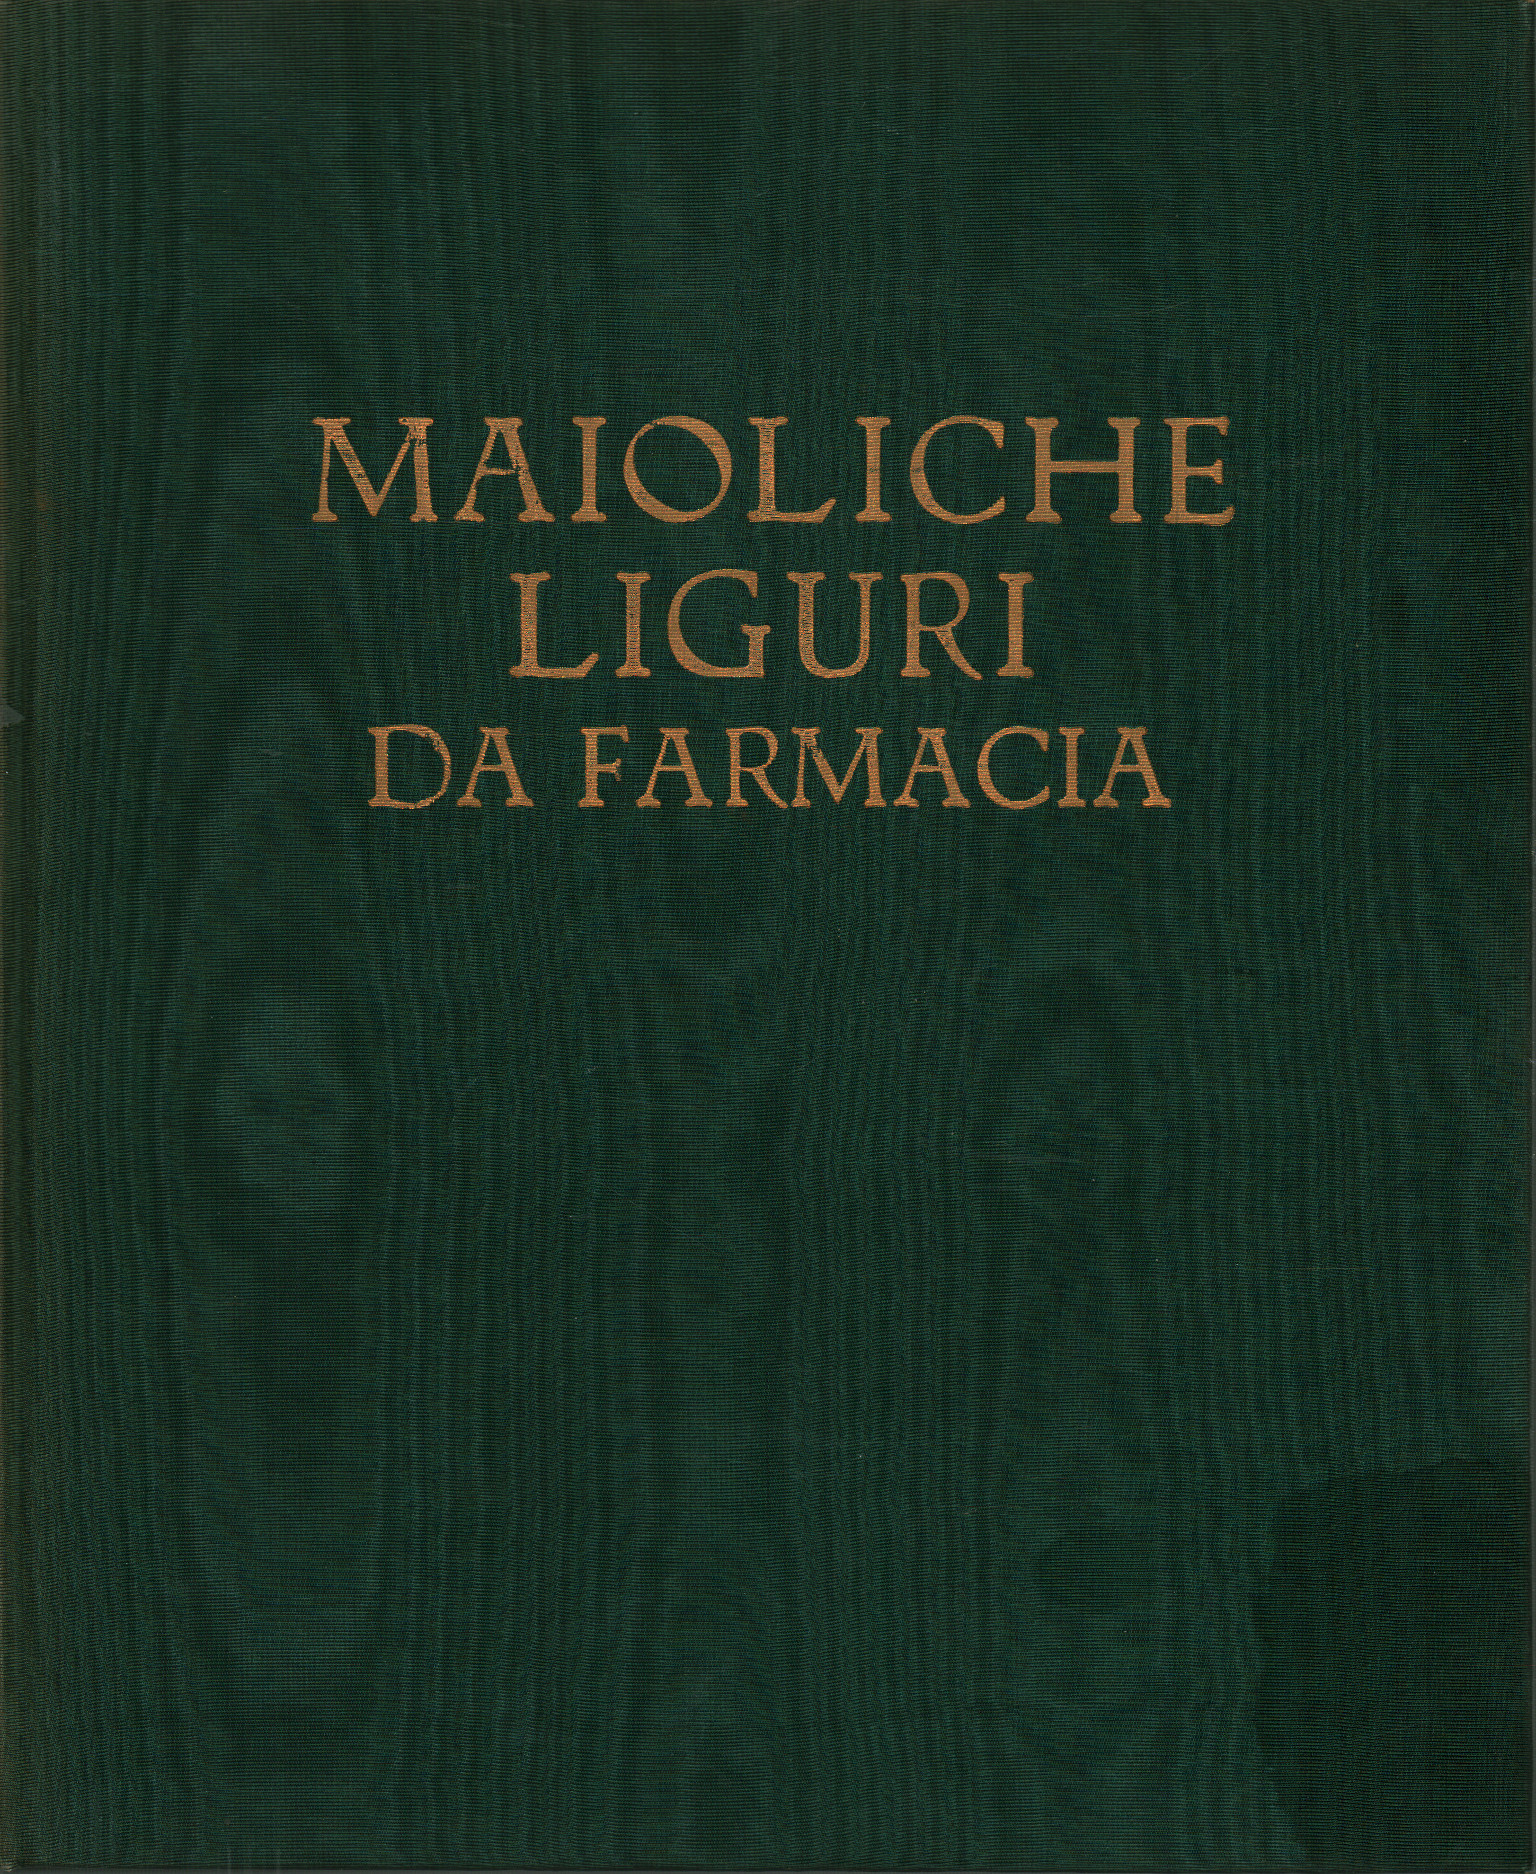 Ligurian majolica from pharmacy, Giovanni Pesce